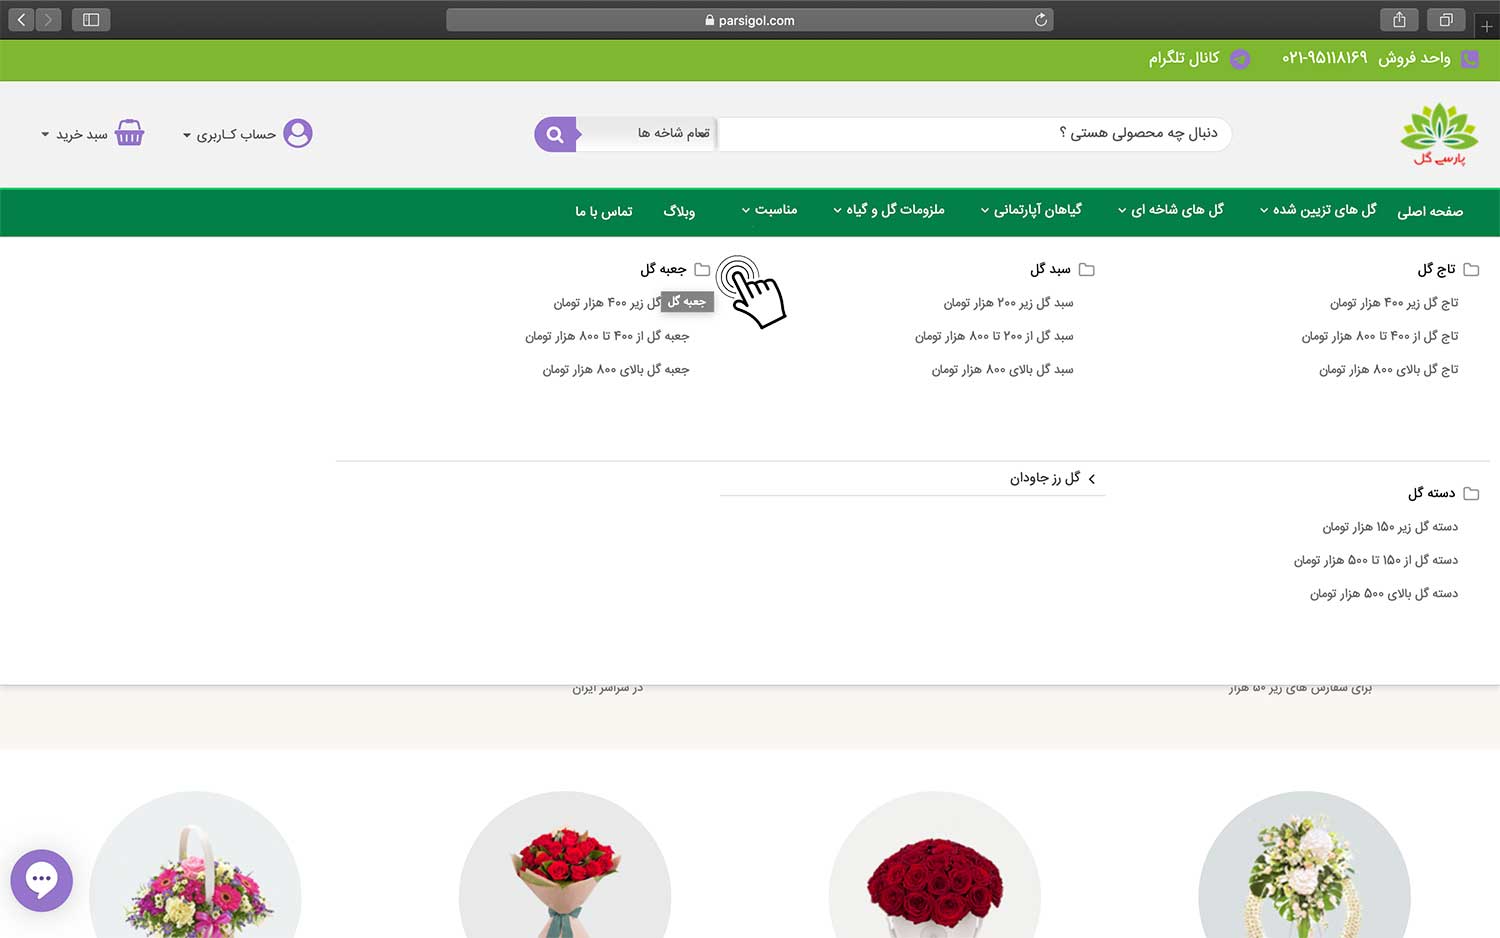 آموزش سفارش اینترنتی گل و خرید آنلاین گل از گلفروشی آنلاین